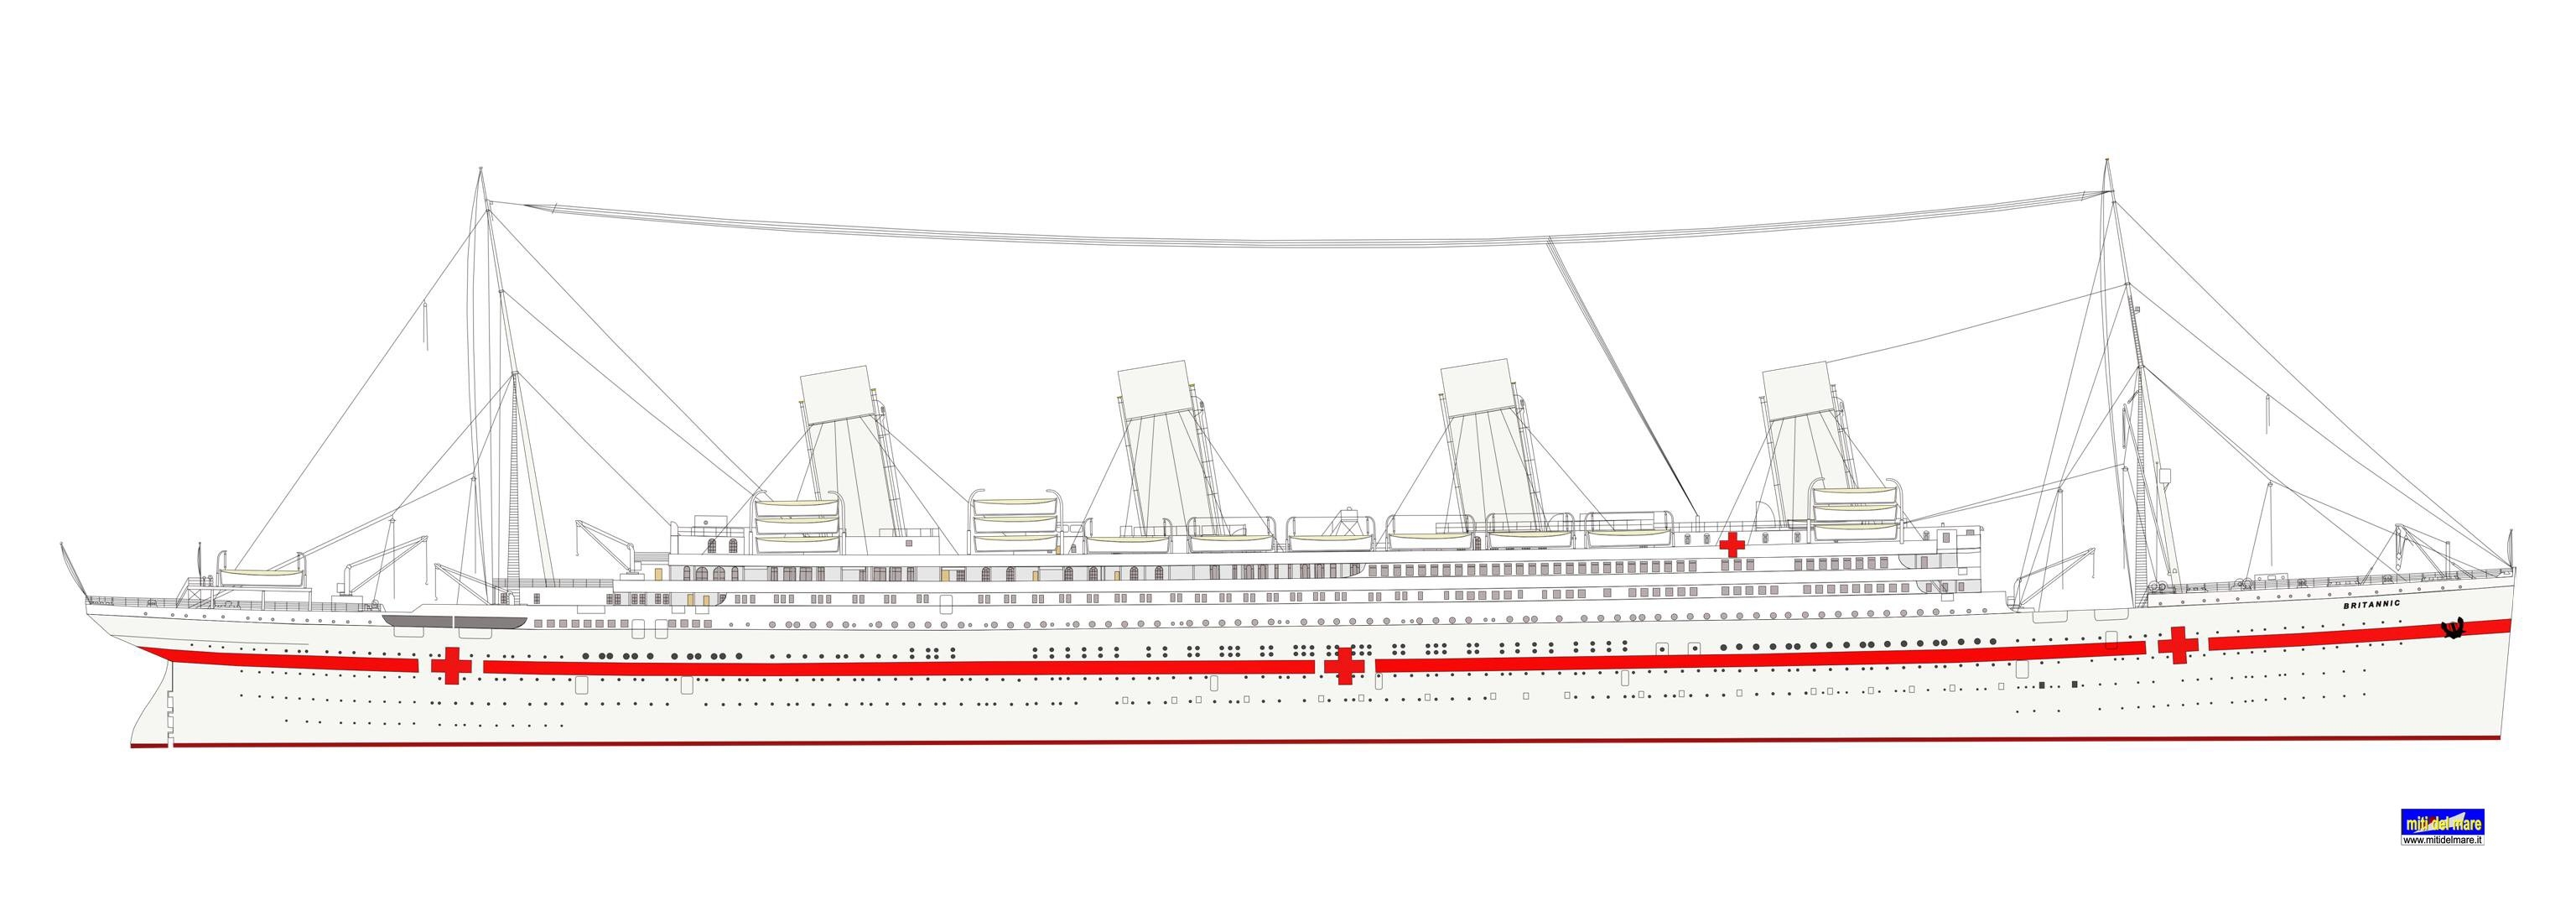 Схема Титаника Британика